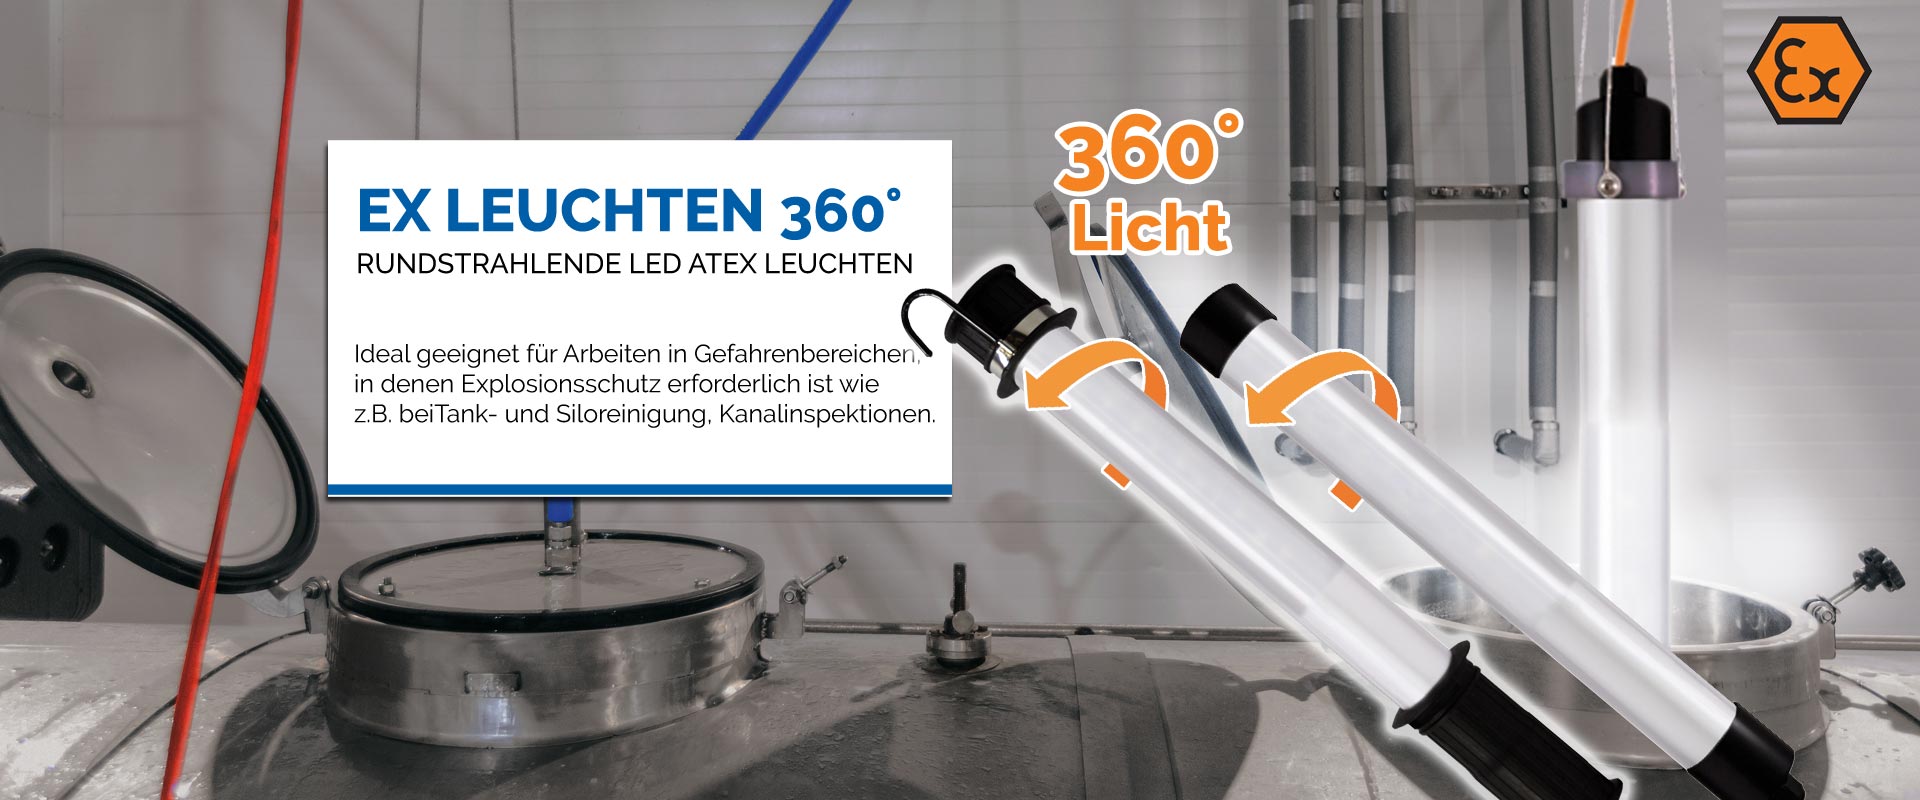 Rundstrahlende und ex-geschützte Leuchten 360° Licht - KIRA Leuchten GmbH